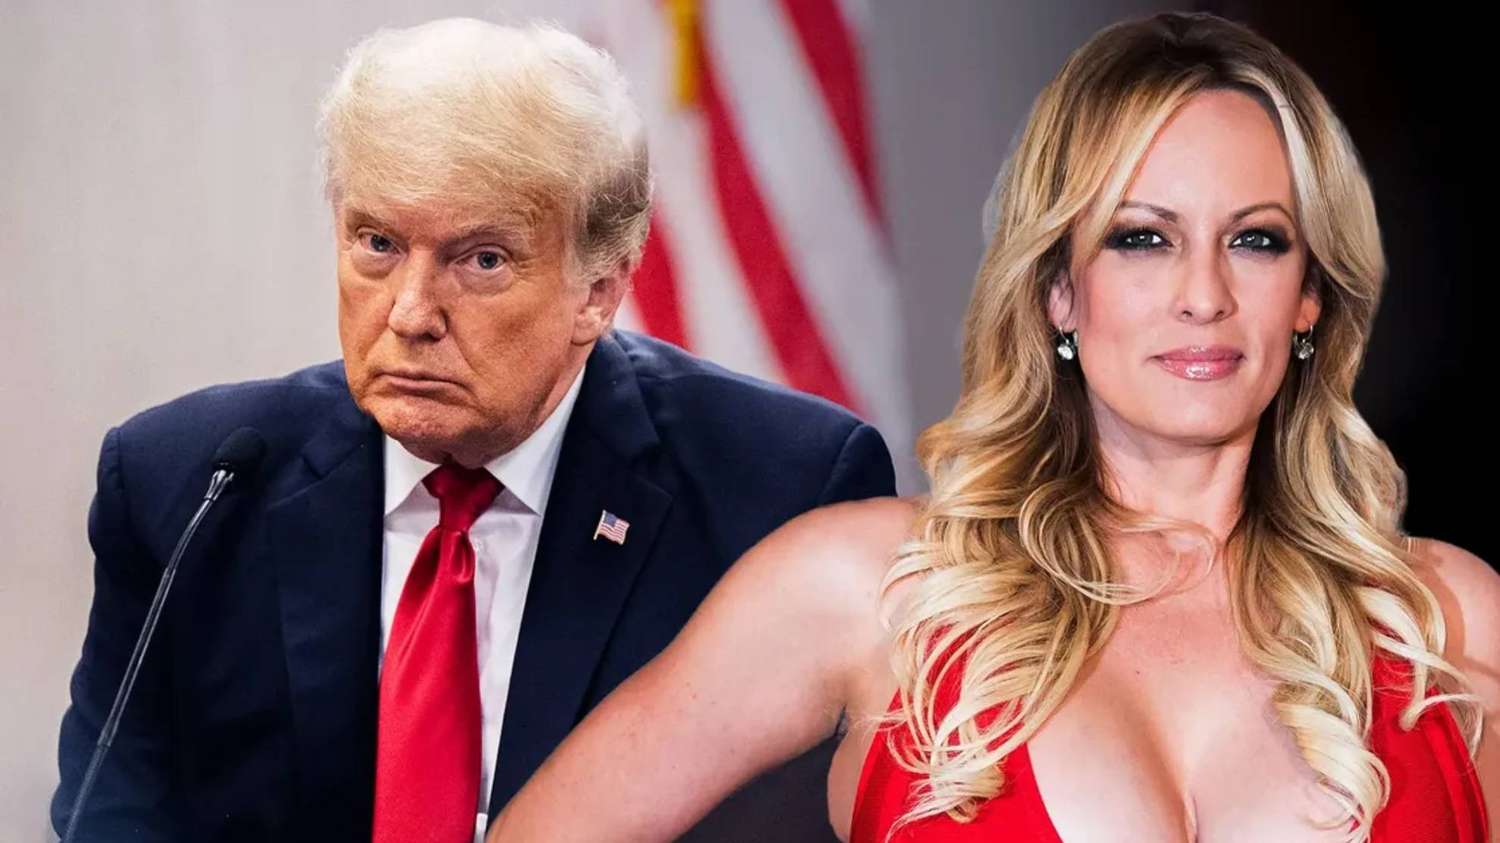 Donald Trump fue acusado de 34 delitos graves, entre ellos sobornar a una actriz porno